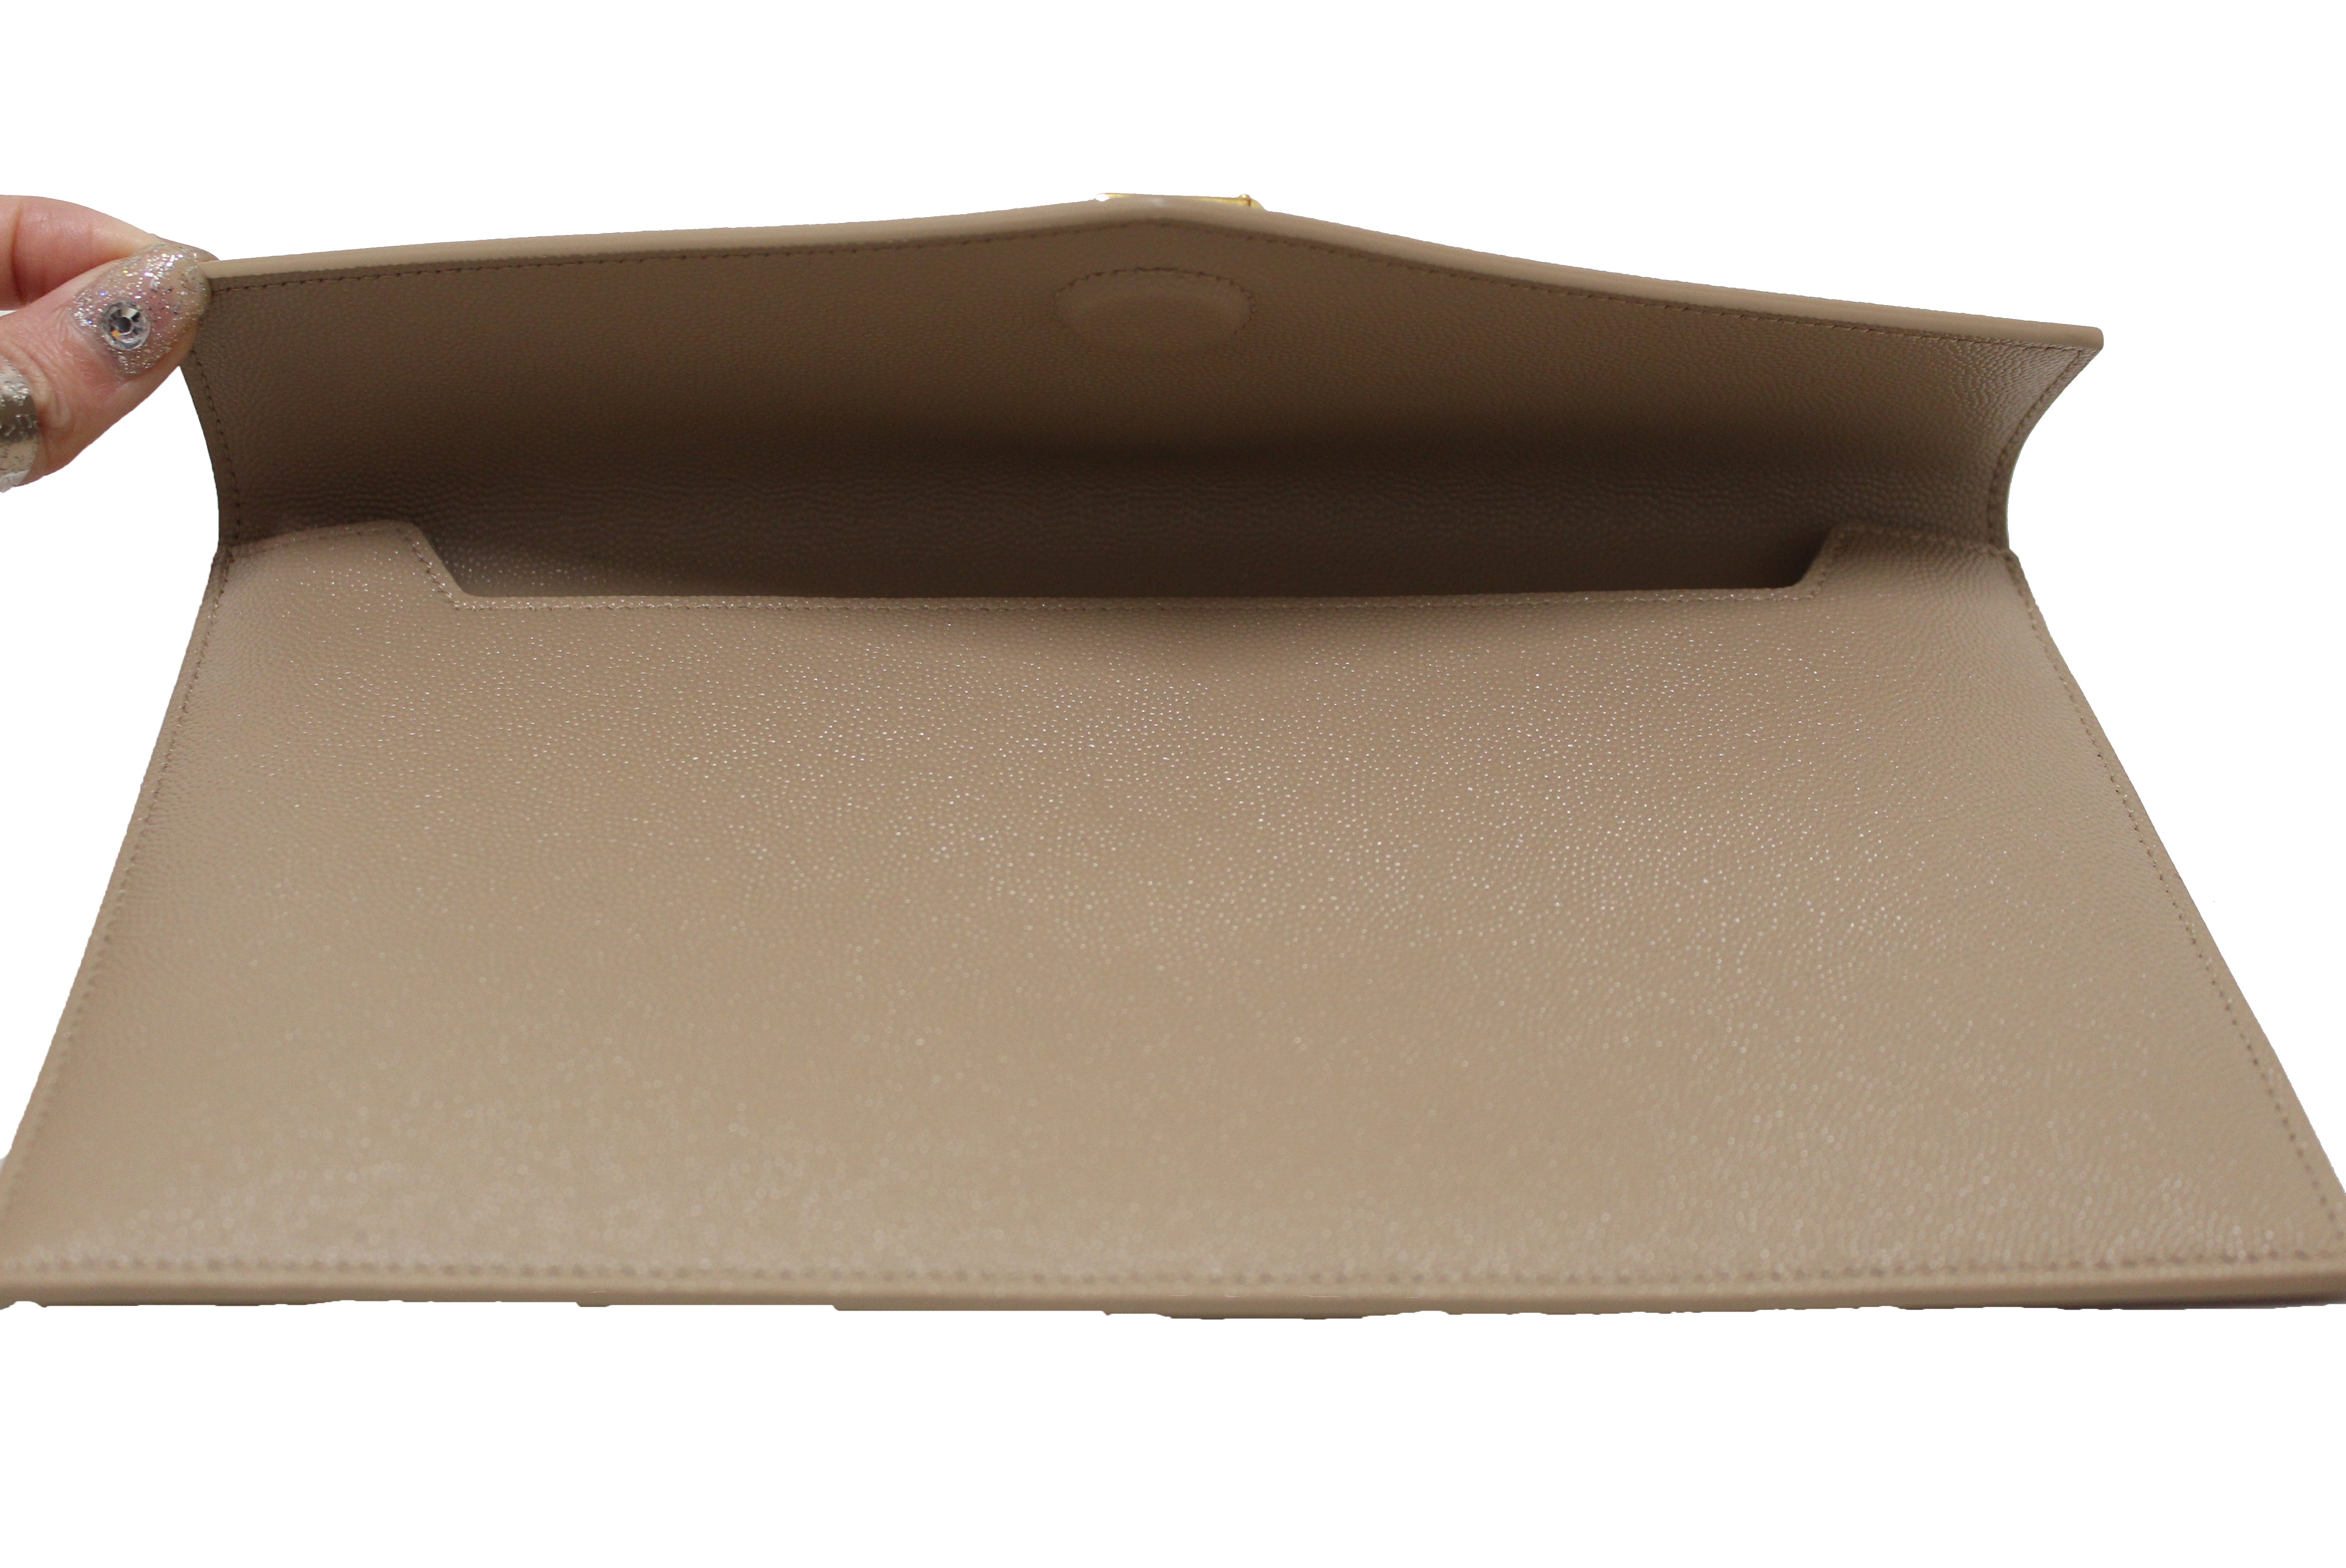 YSL uptown pouch in grain de poudre embossed leather in dark beige